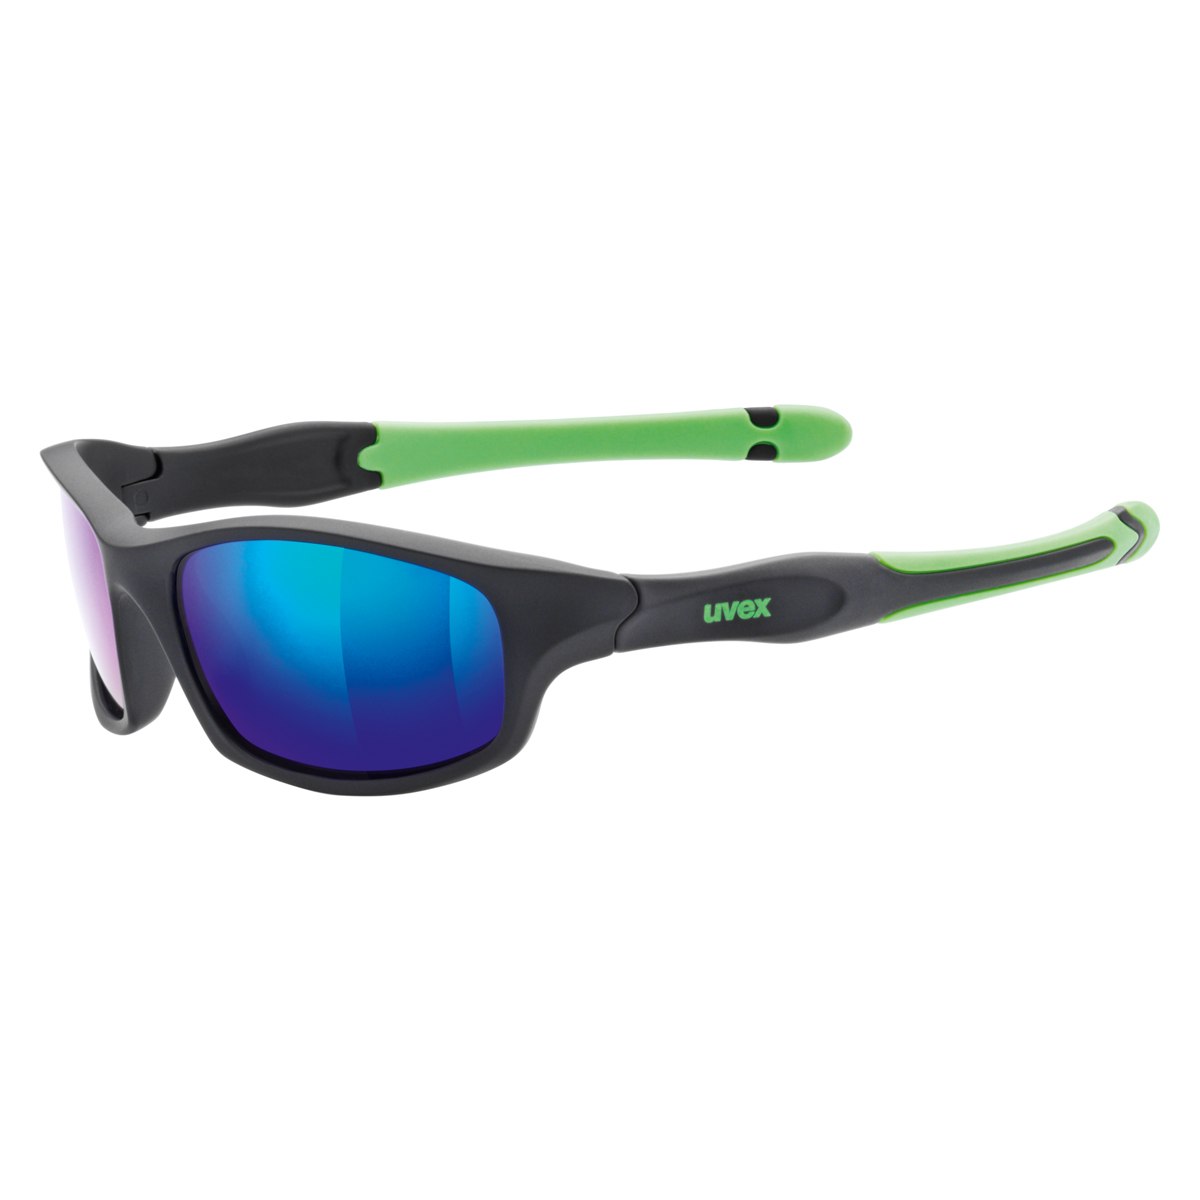 Produktbild von Uvex sportstyle 507 Kinderbrille - black mat green/mirror green